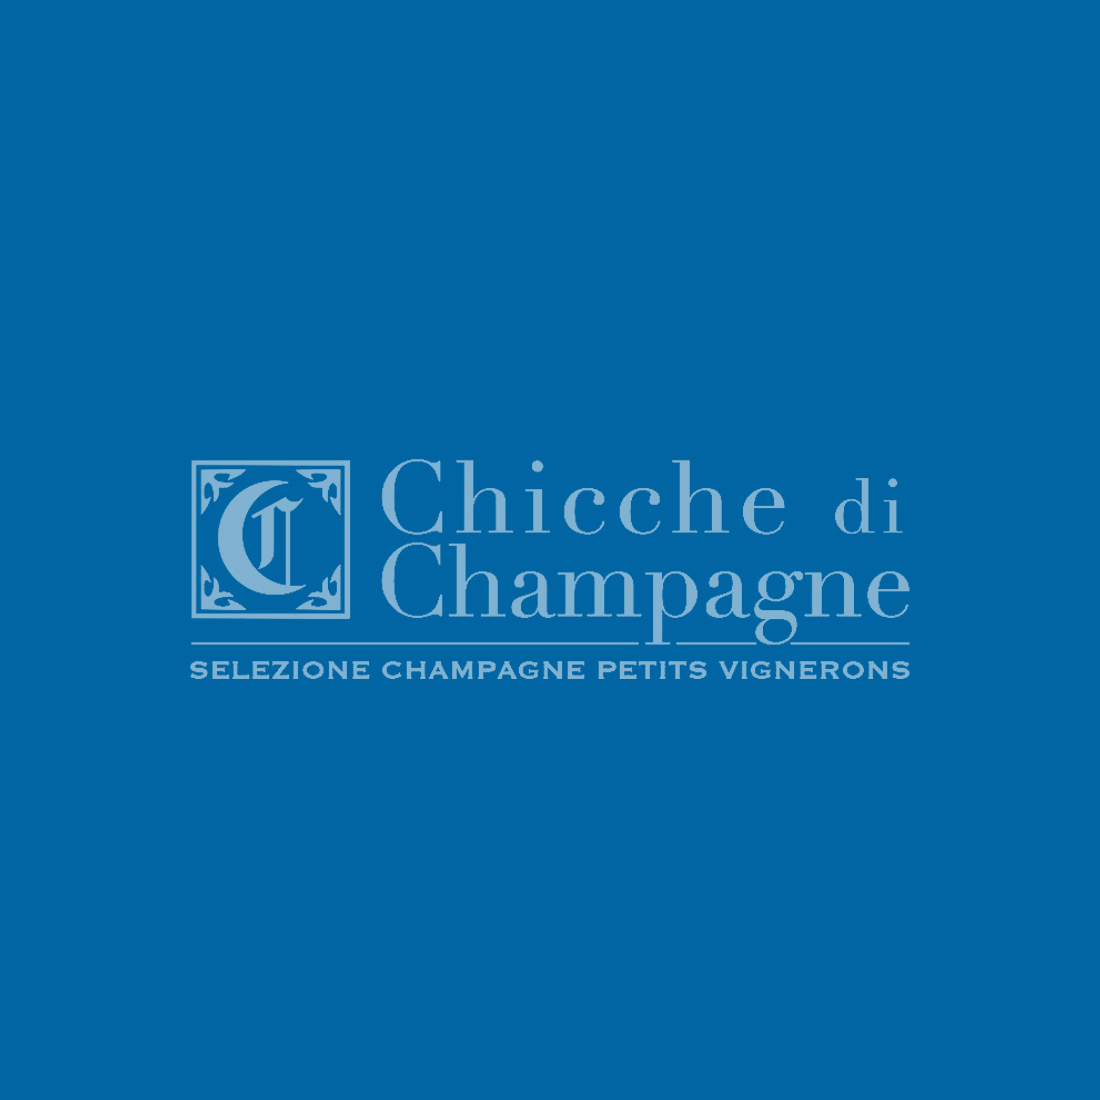 Chicche di Champagne sito web